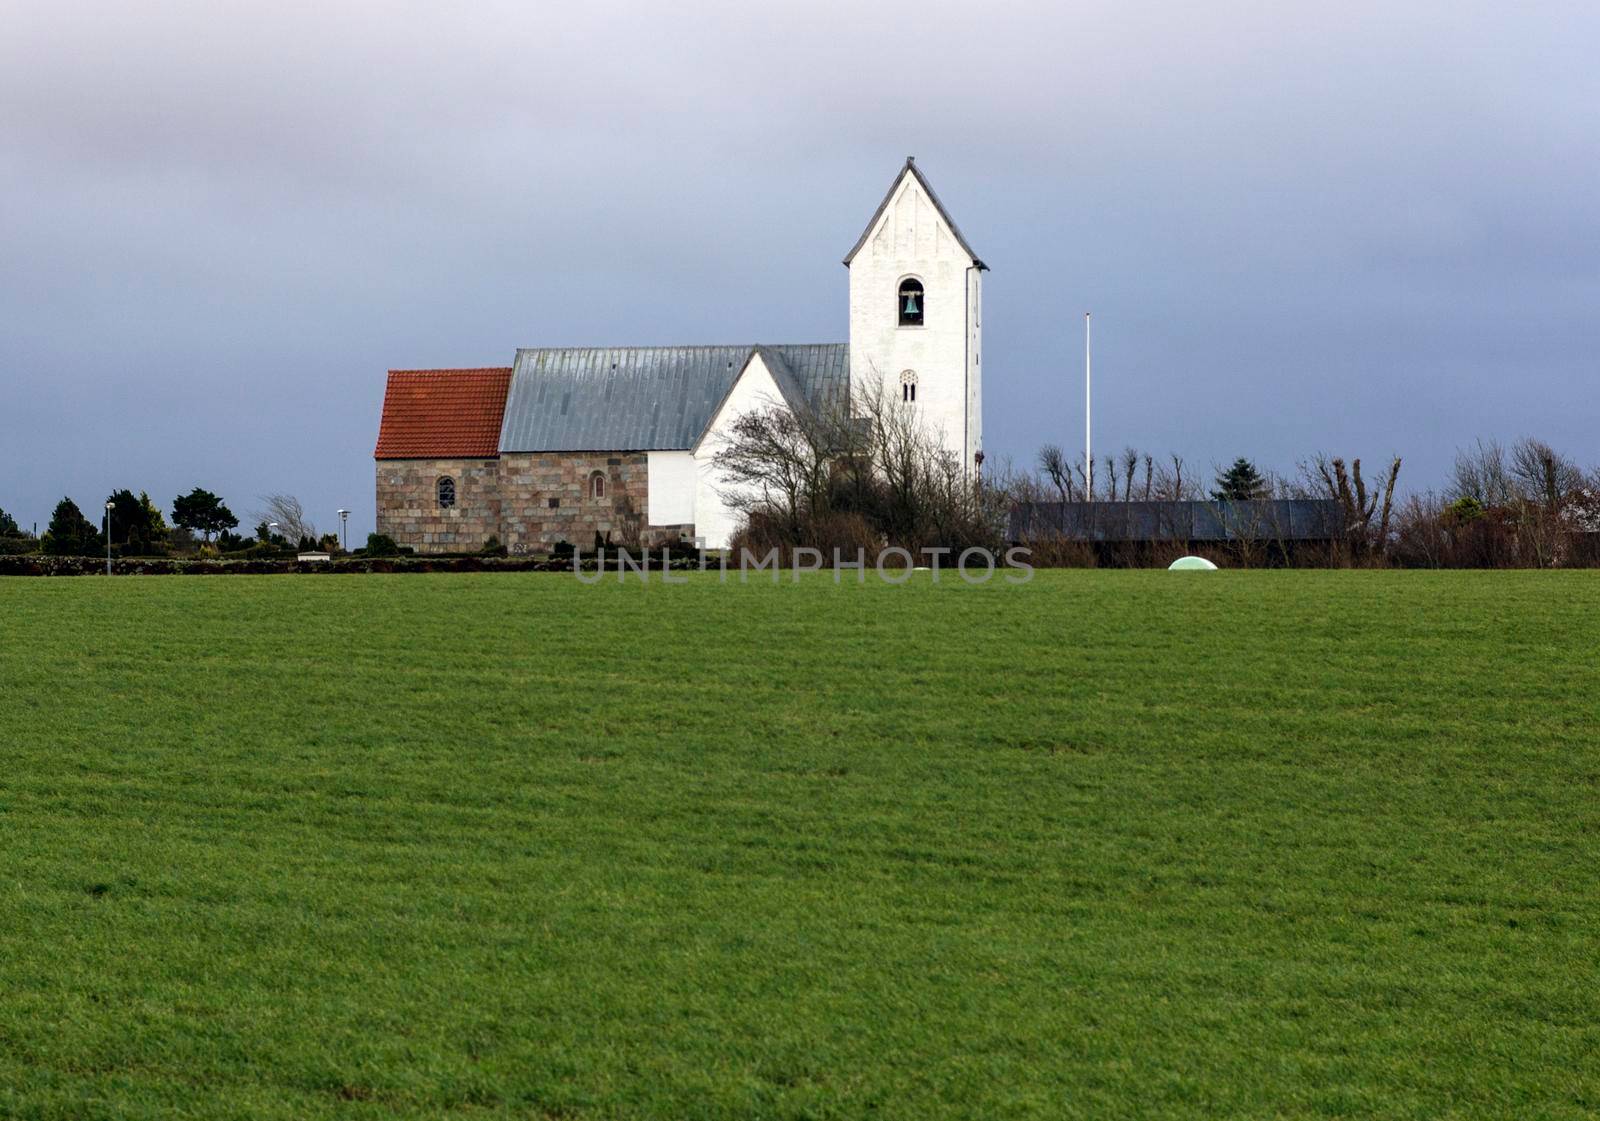 Old church in Lemvig, Denmark